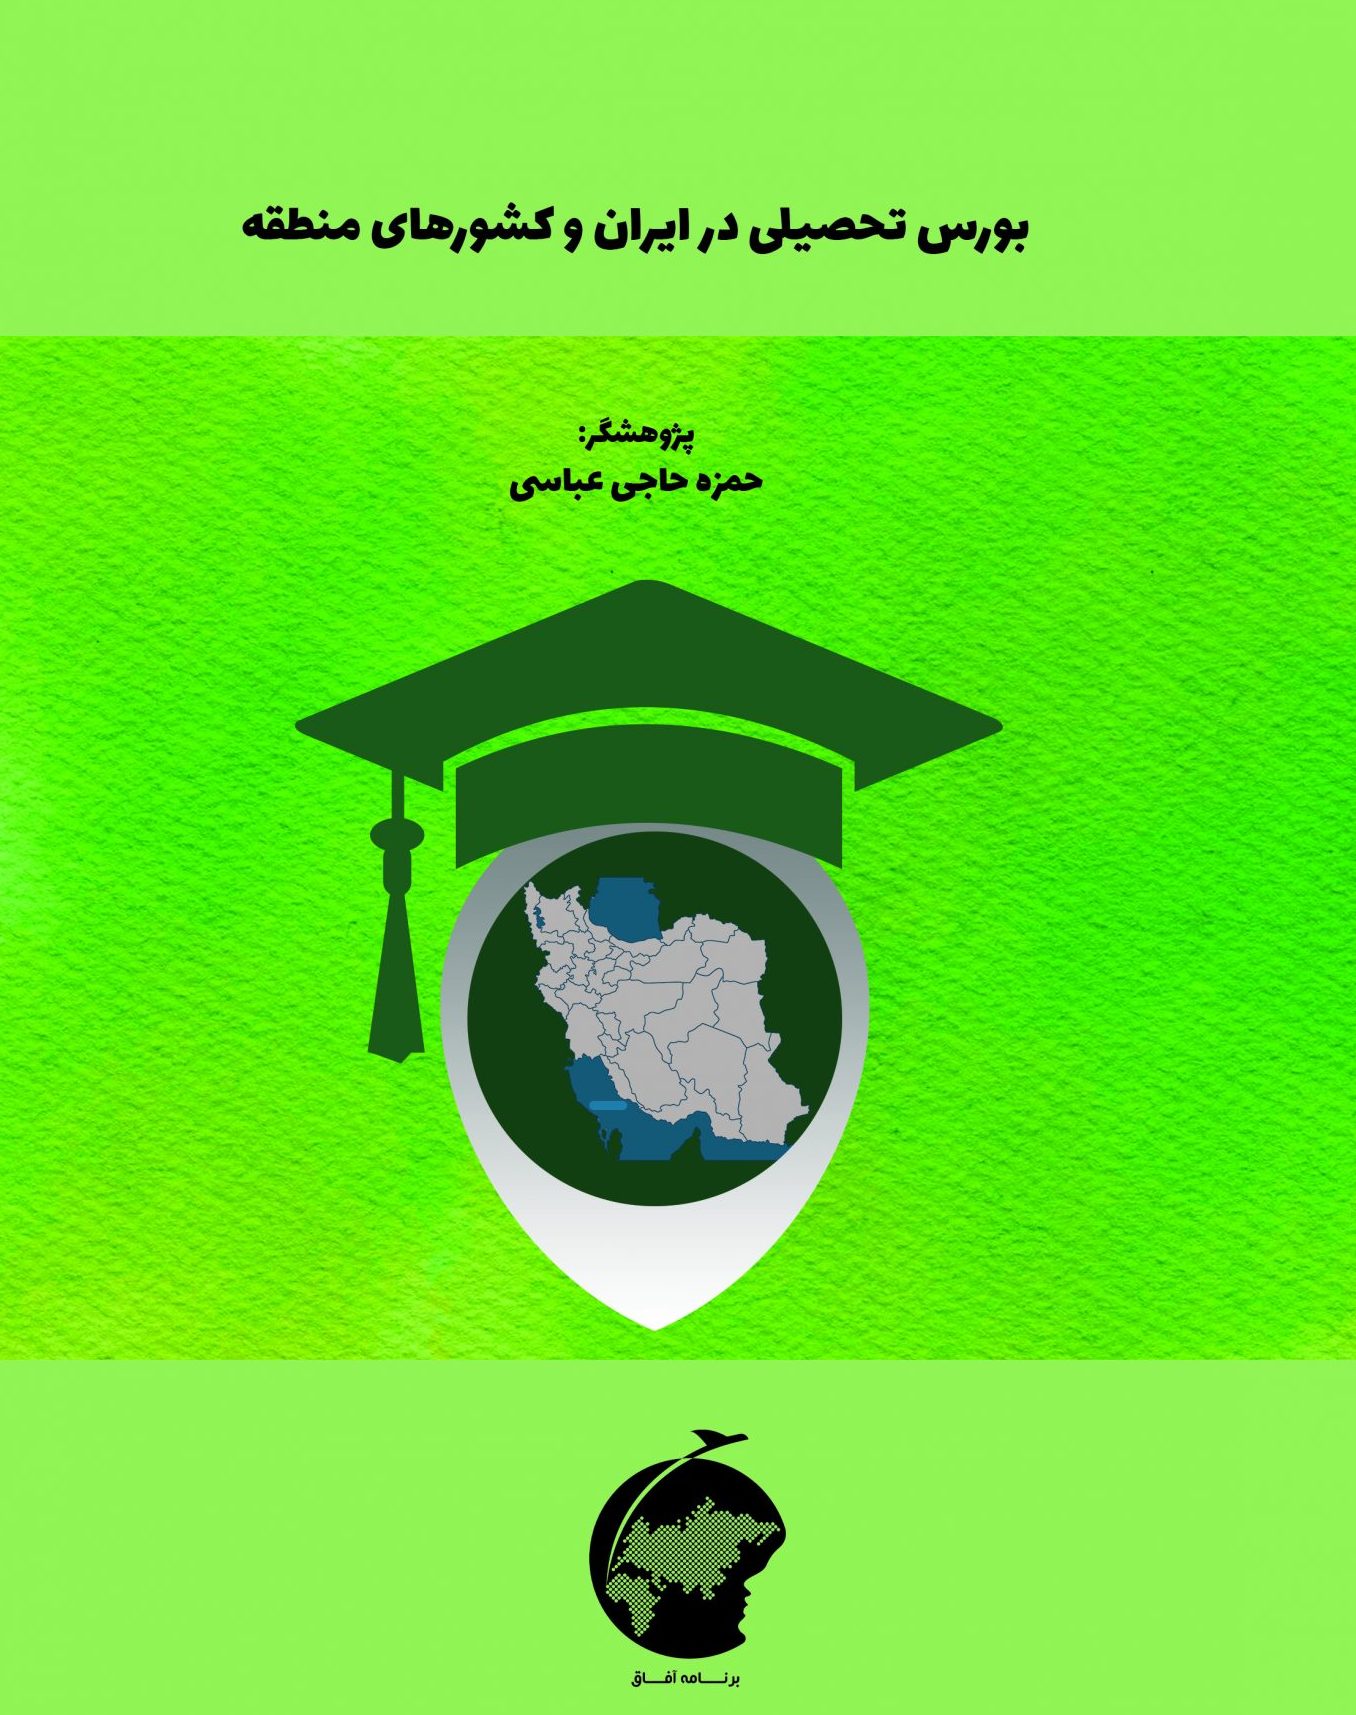 بورس تحصیلی در ایران و کشورهای منطقه